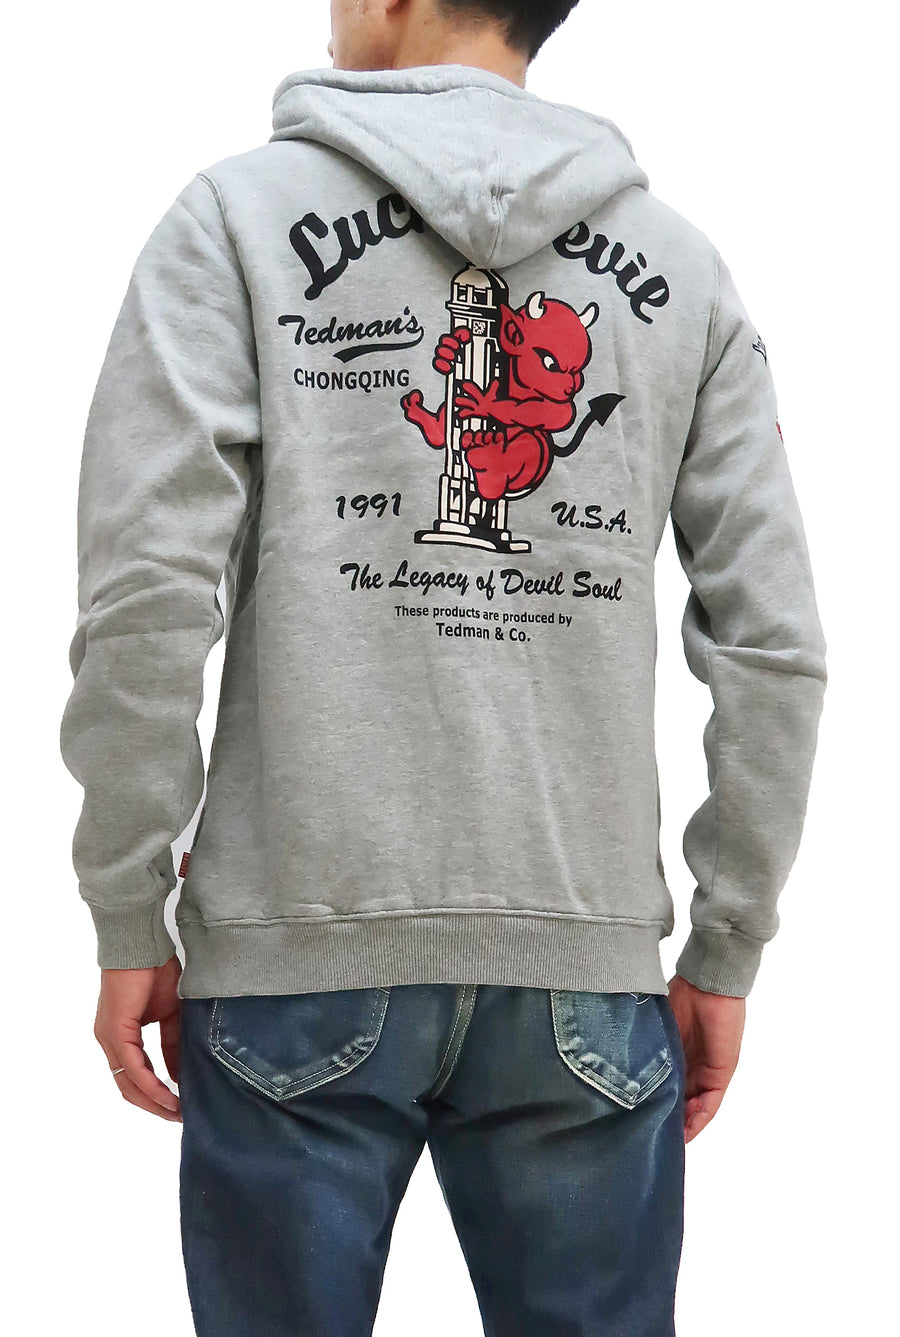 Guggenheim Museum Gelijkenis in het geheim Tedman Pullover Hoodie Men's Lucky Devil Graphic Printed Hooded Sweats –  RODEO-JAPAN Pine-Avenue Clothes shop